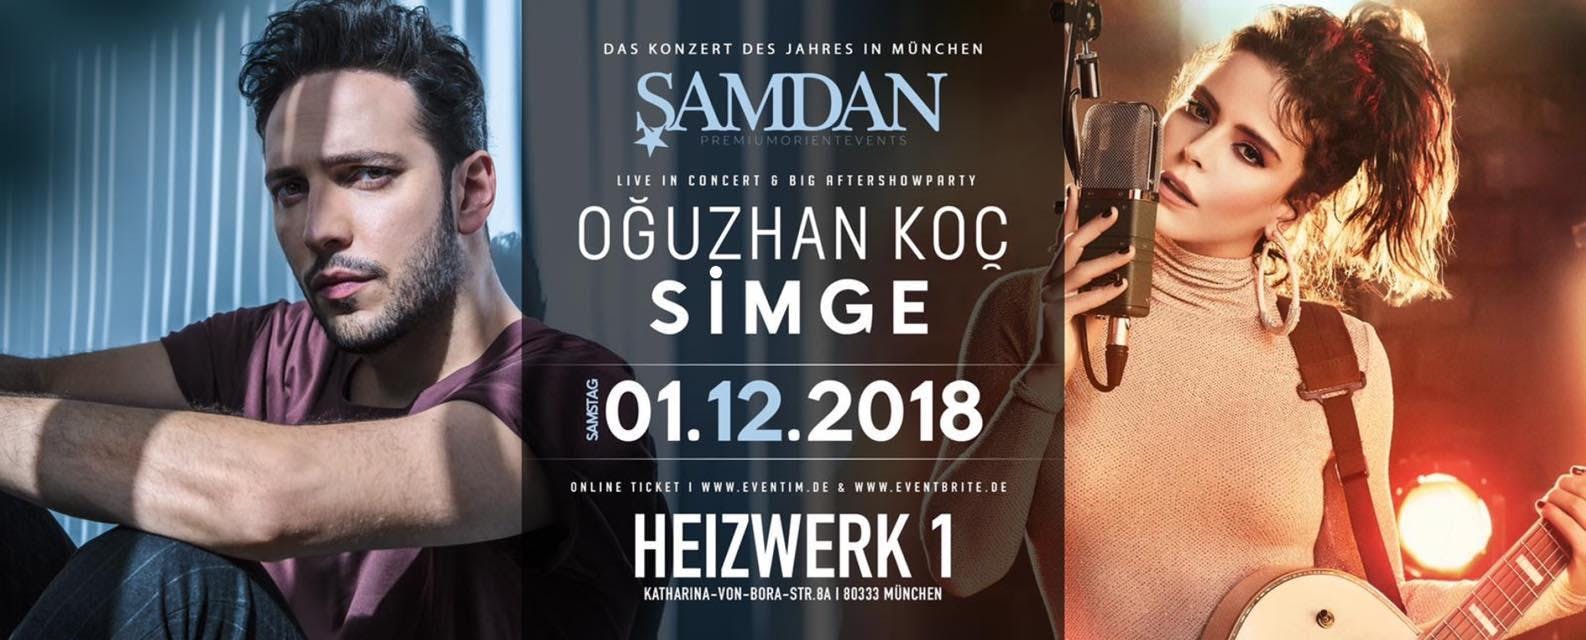 OGUZHAN KOC & SIMGE LIVE ON STAGE + MEGA AFTERSHOWPARTY MÜNCHEN!